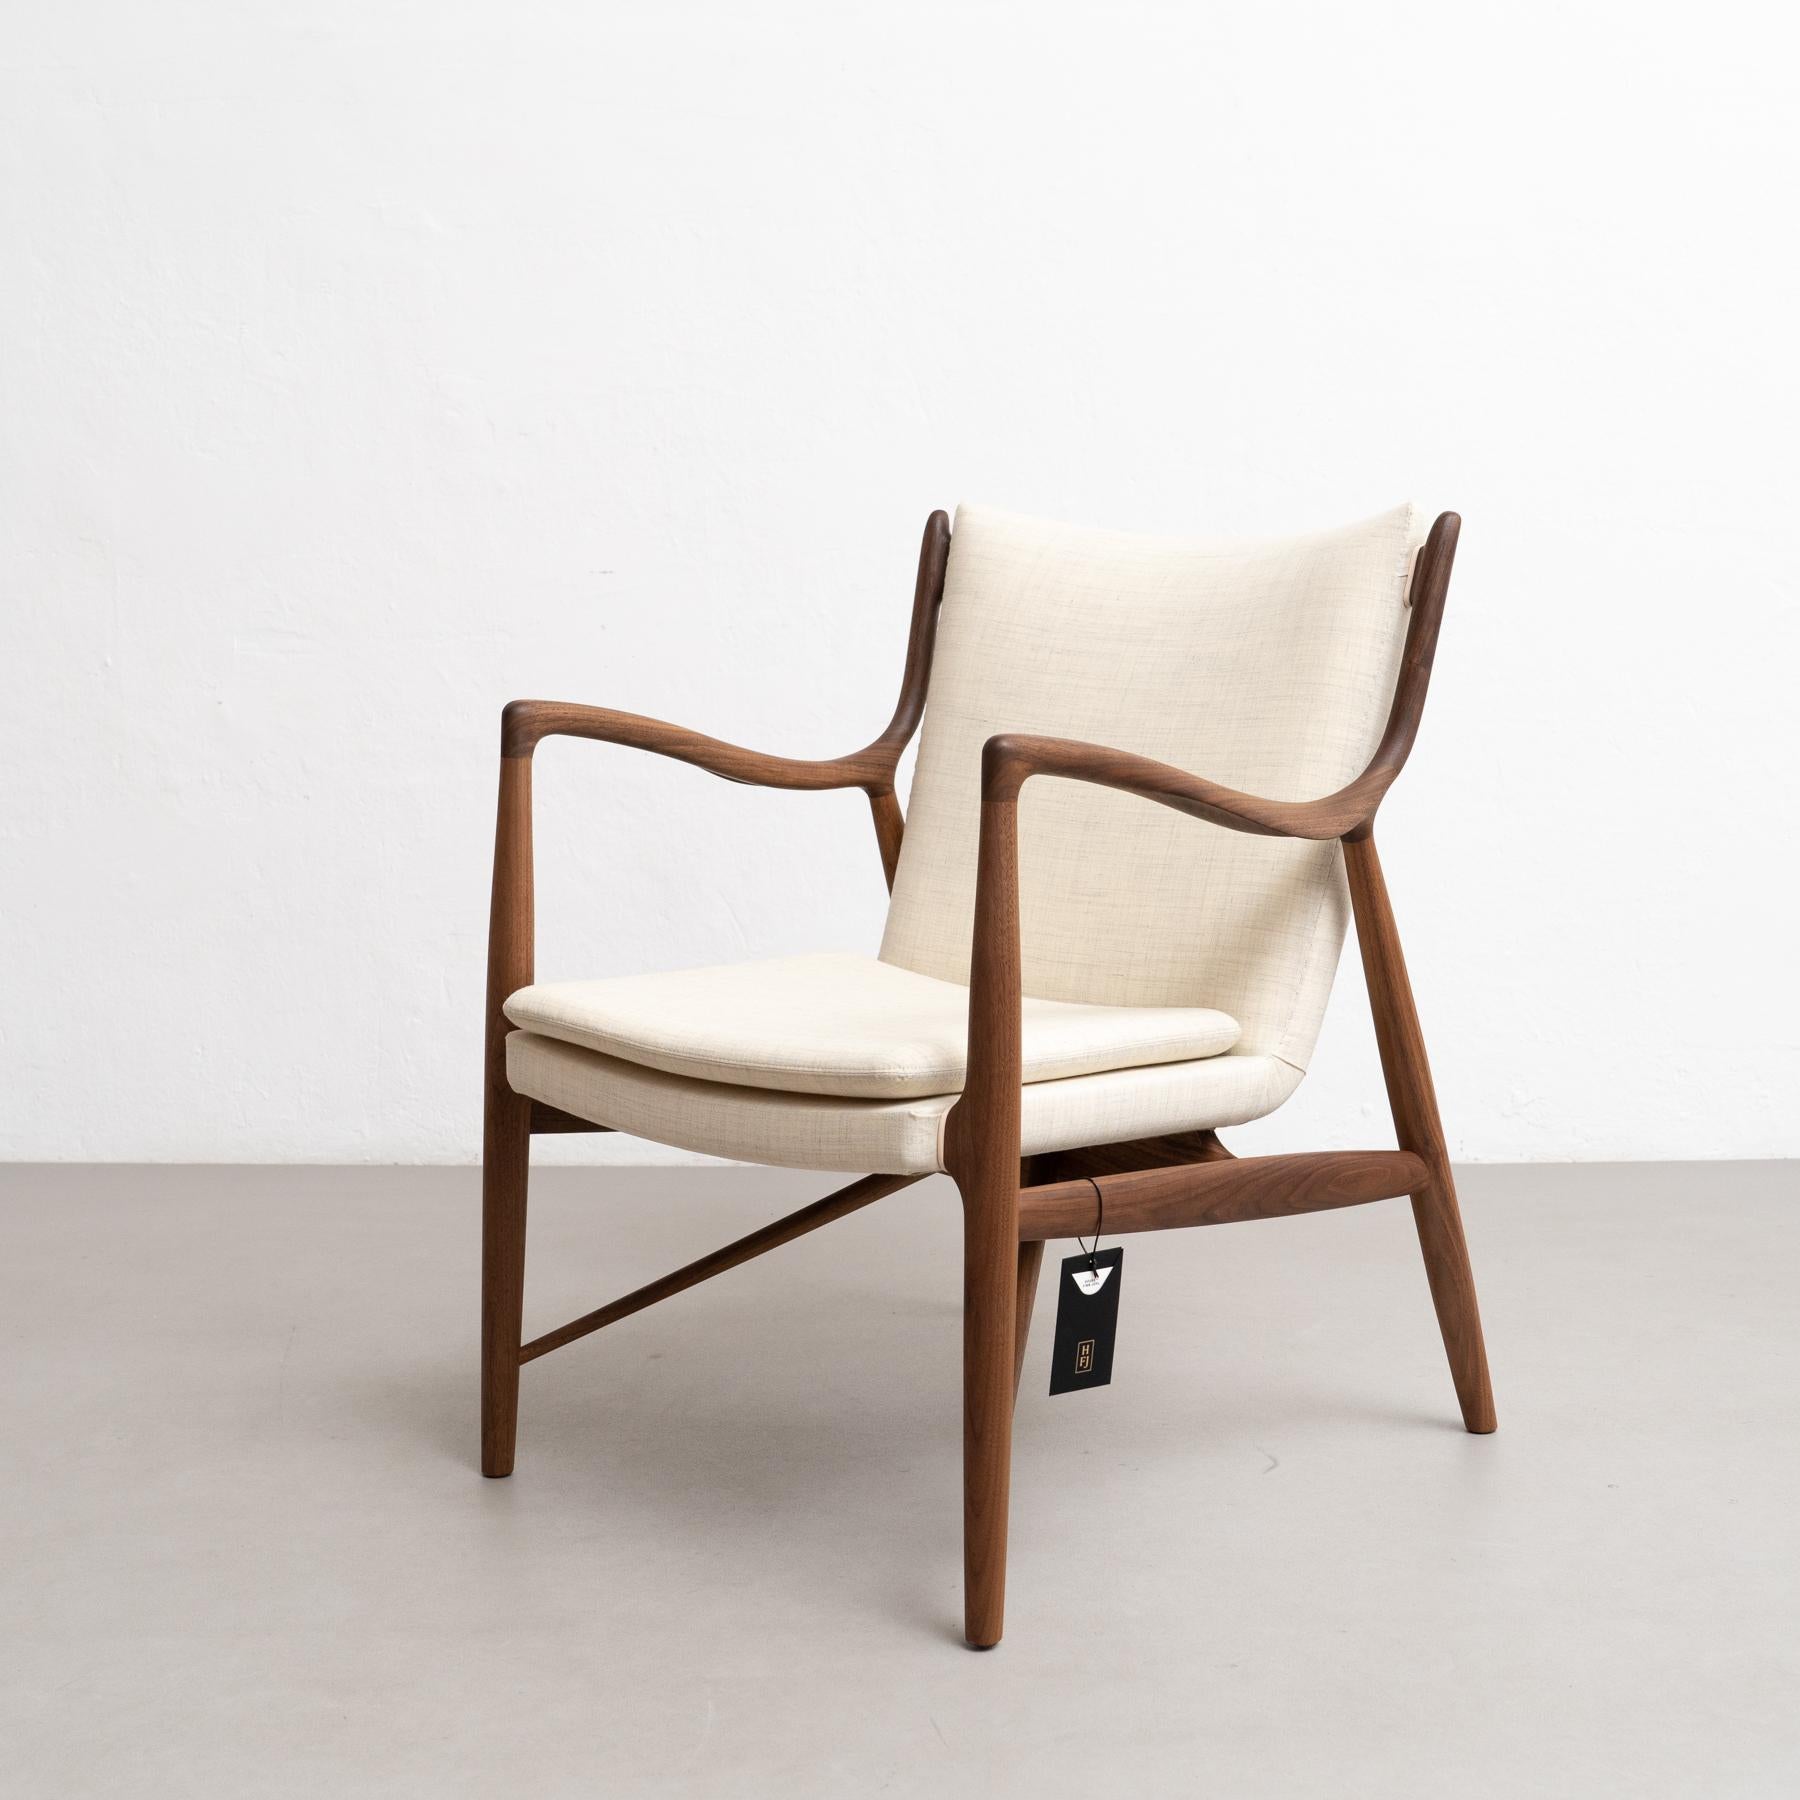 Chaise conçue par Finn Juhls en 1945, relancée en 2003.
Fabriqué par la Maison Finn Juhl au Danemark.

À l'automne 1945, Finn Juhls a présenté la chaise 45 à l'exposition annuelle de la Guild des ébénistes. Aujourd'hui, la chaise est largement